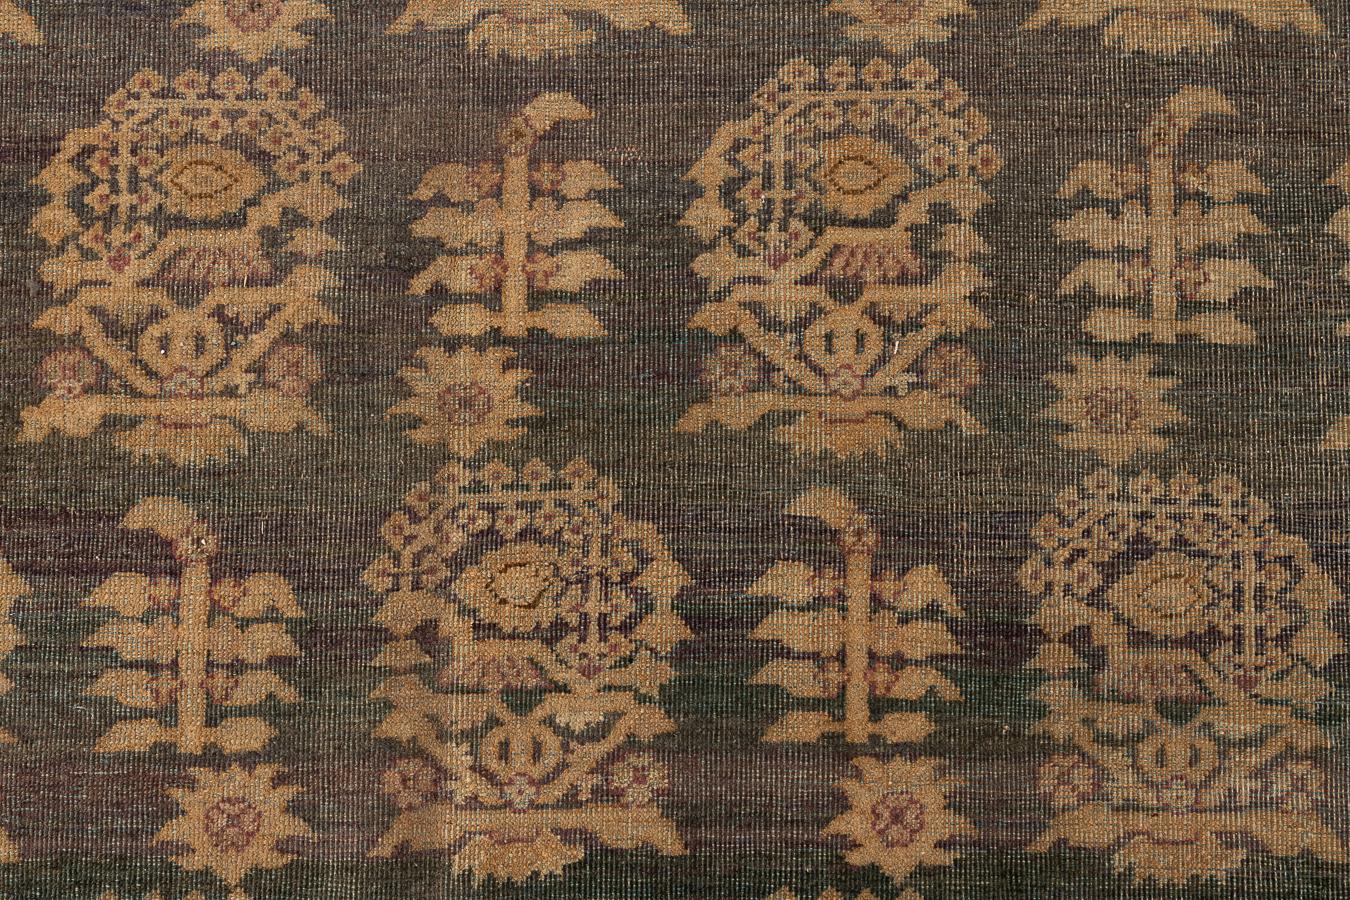 Agra - Nordindien

Dieser prächtige Teppich mit dem Tabriz-Muster wurde im 19. Jahrhundert in Agra, Indien, hergestellt. Agra-Teppiche sind von gleicher Qualität wie Perserteppiche, haben aber einen einzigartigen indischen Touch.

Agra, berühmt für